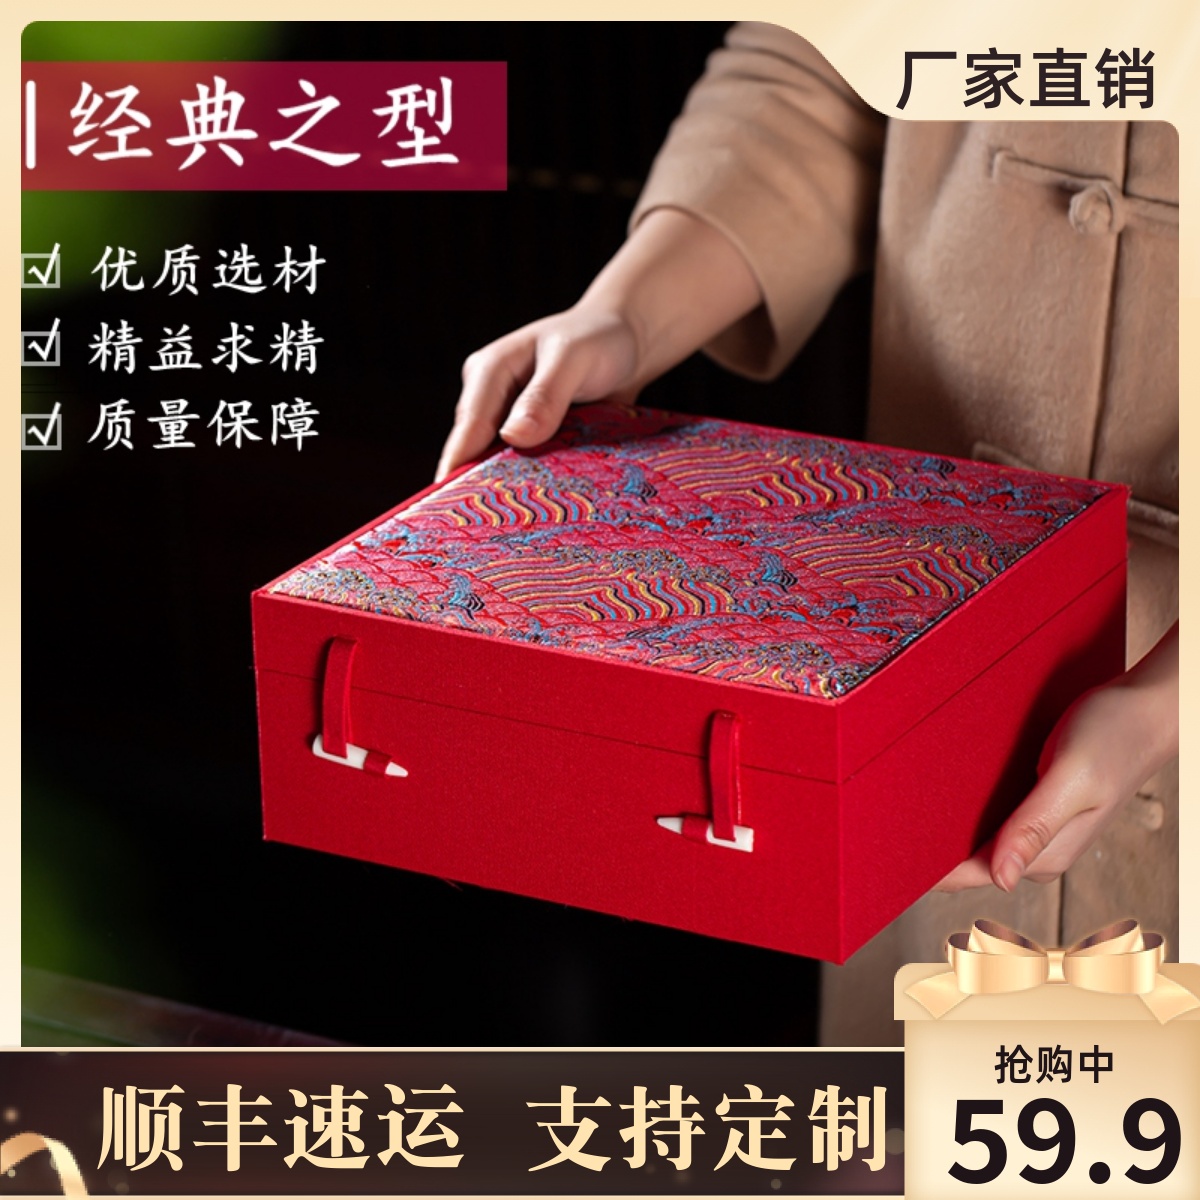 年货礼盒包装盒瓷盘花瓶紫砂壶瓷器工艺品收藏品定做订制红色礼盒